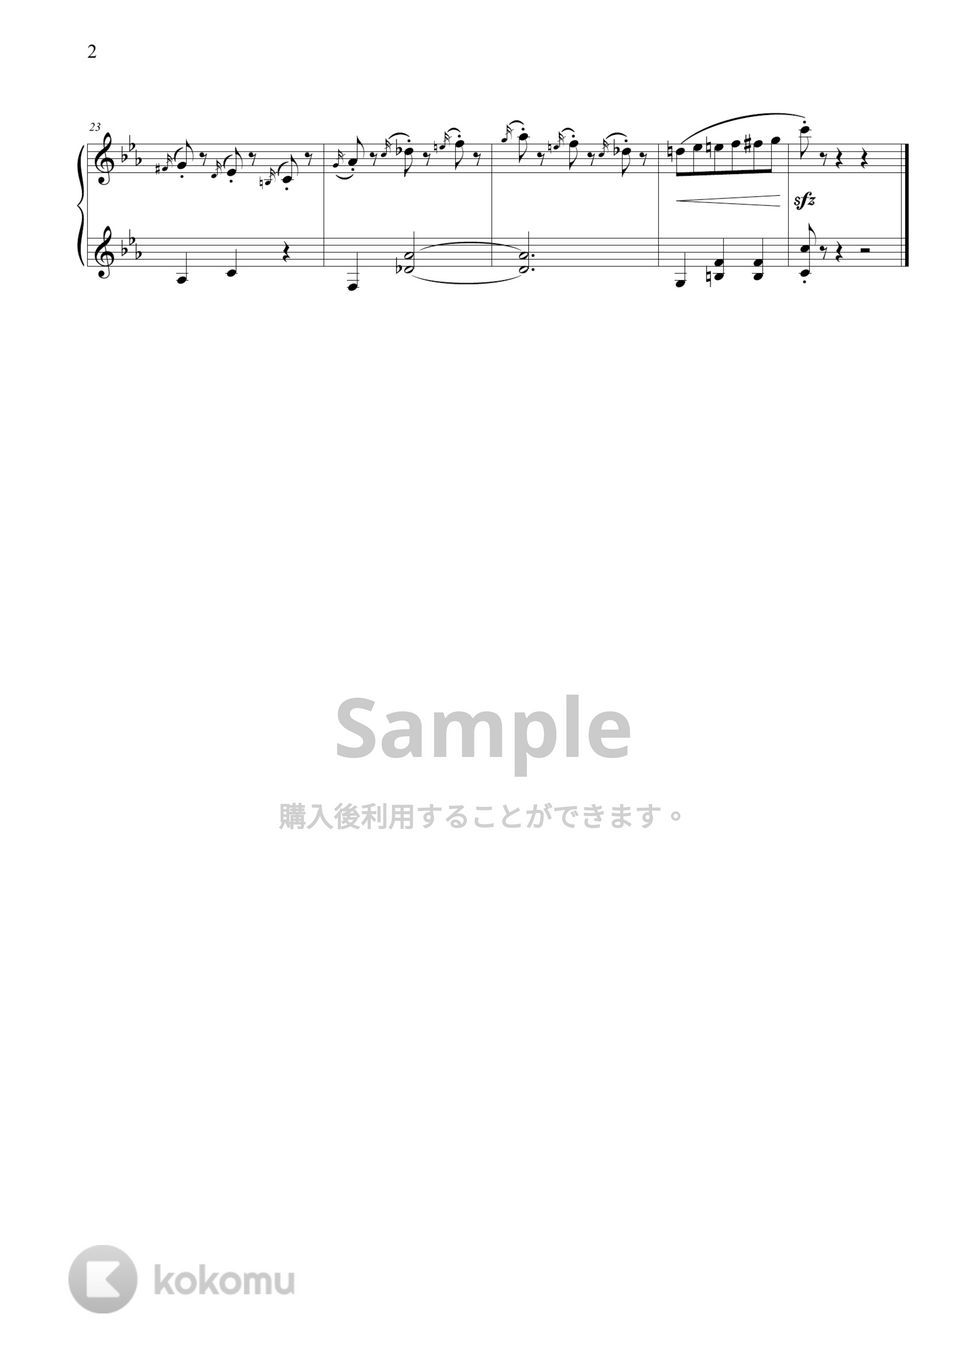 不能說的秘密 - 斗琴 (トイピアノ(32鍵盤)) by THIS IS PIANO